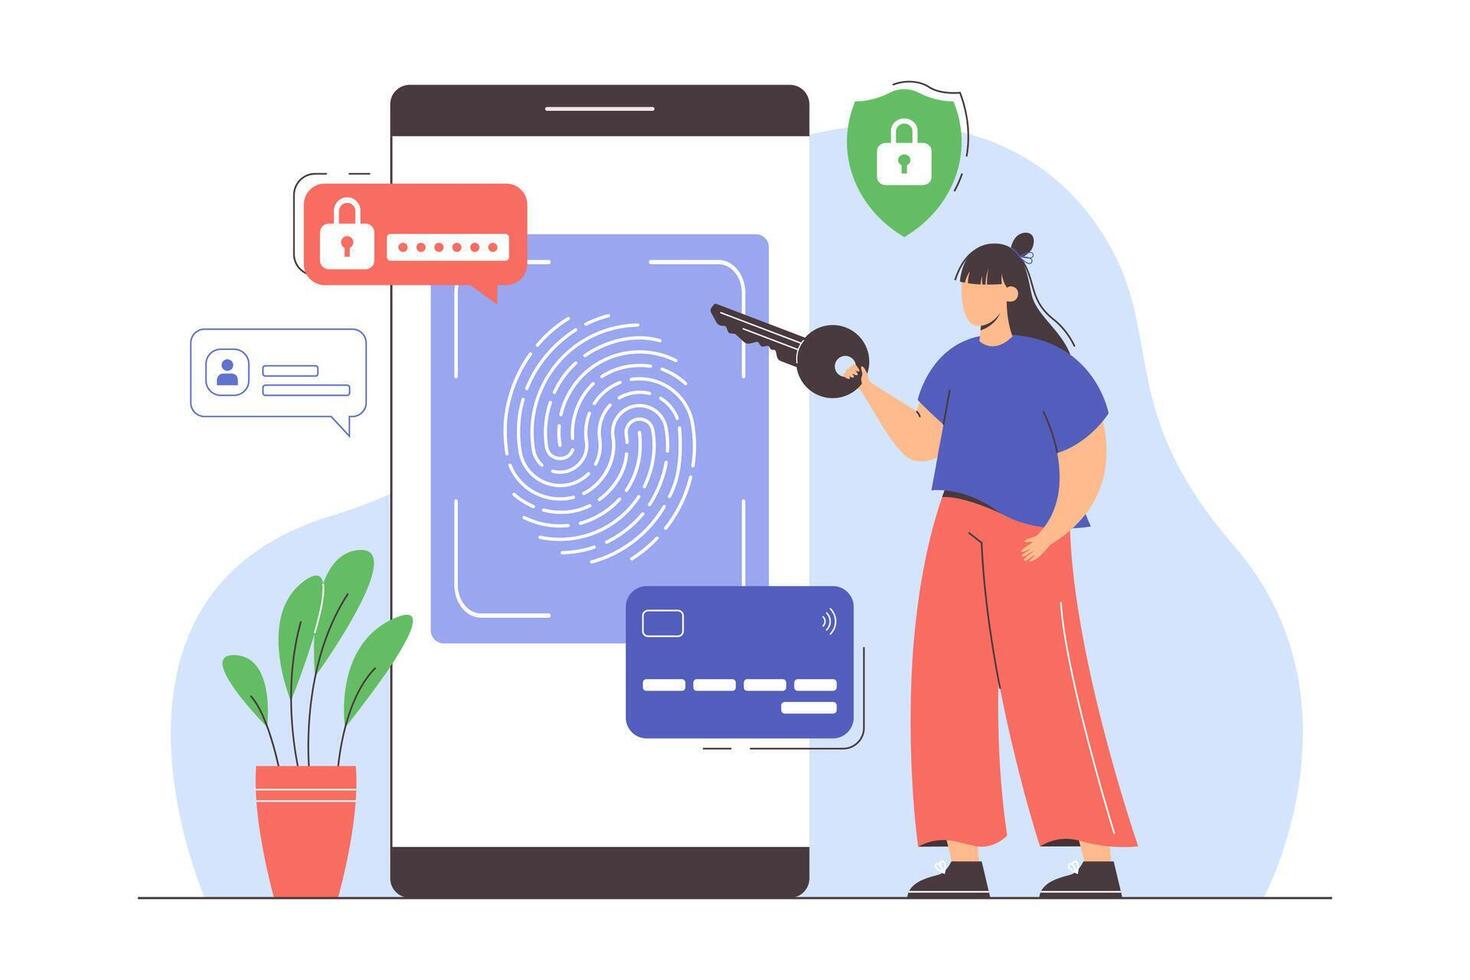 Daten Schutz mit biometrisch Identifikation. Fingerabdruck Sicherheit System auf Smartphone zum sichern Authentifizierung und Transaktionen. eben Frau zur Verfügung stellen Schlüssel zu Zugriff Daten. Ich würde Scannen Technologie. vektor